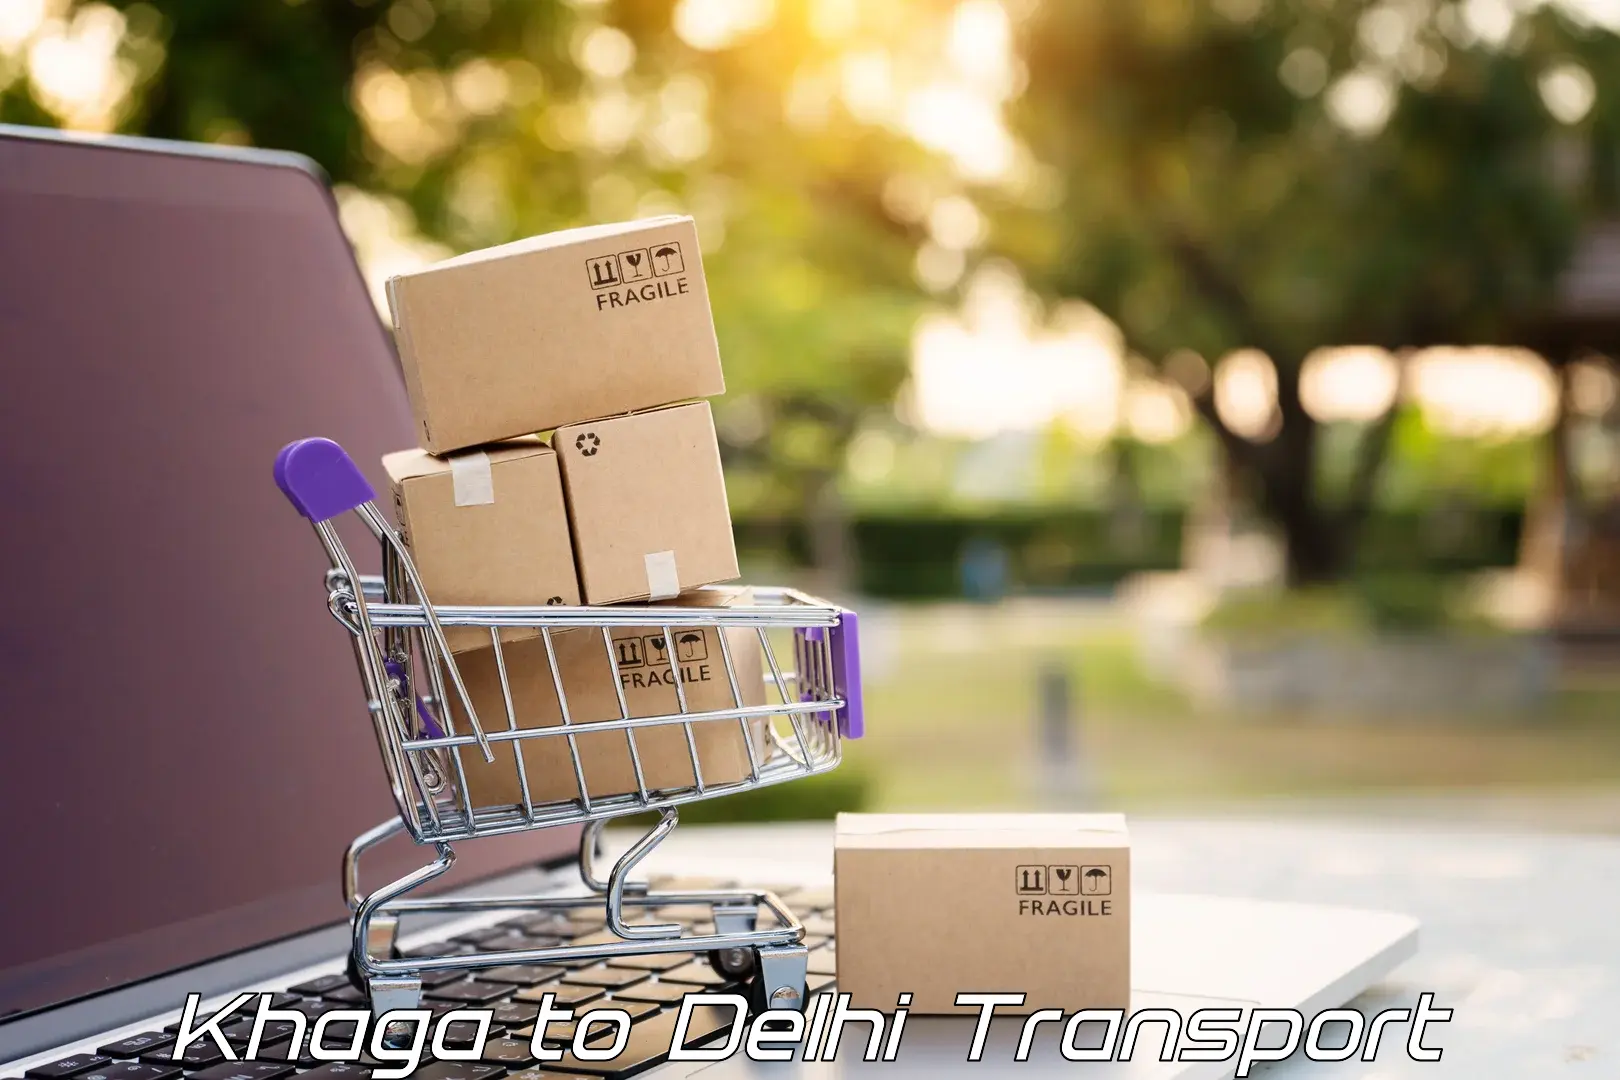 Daily transport service Khaga to Guru Gobind Singh Indraprastha University New Delhi